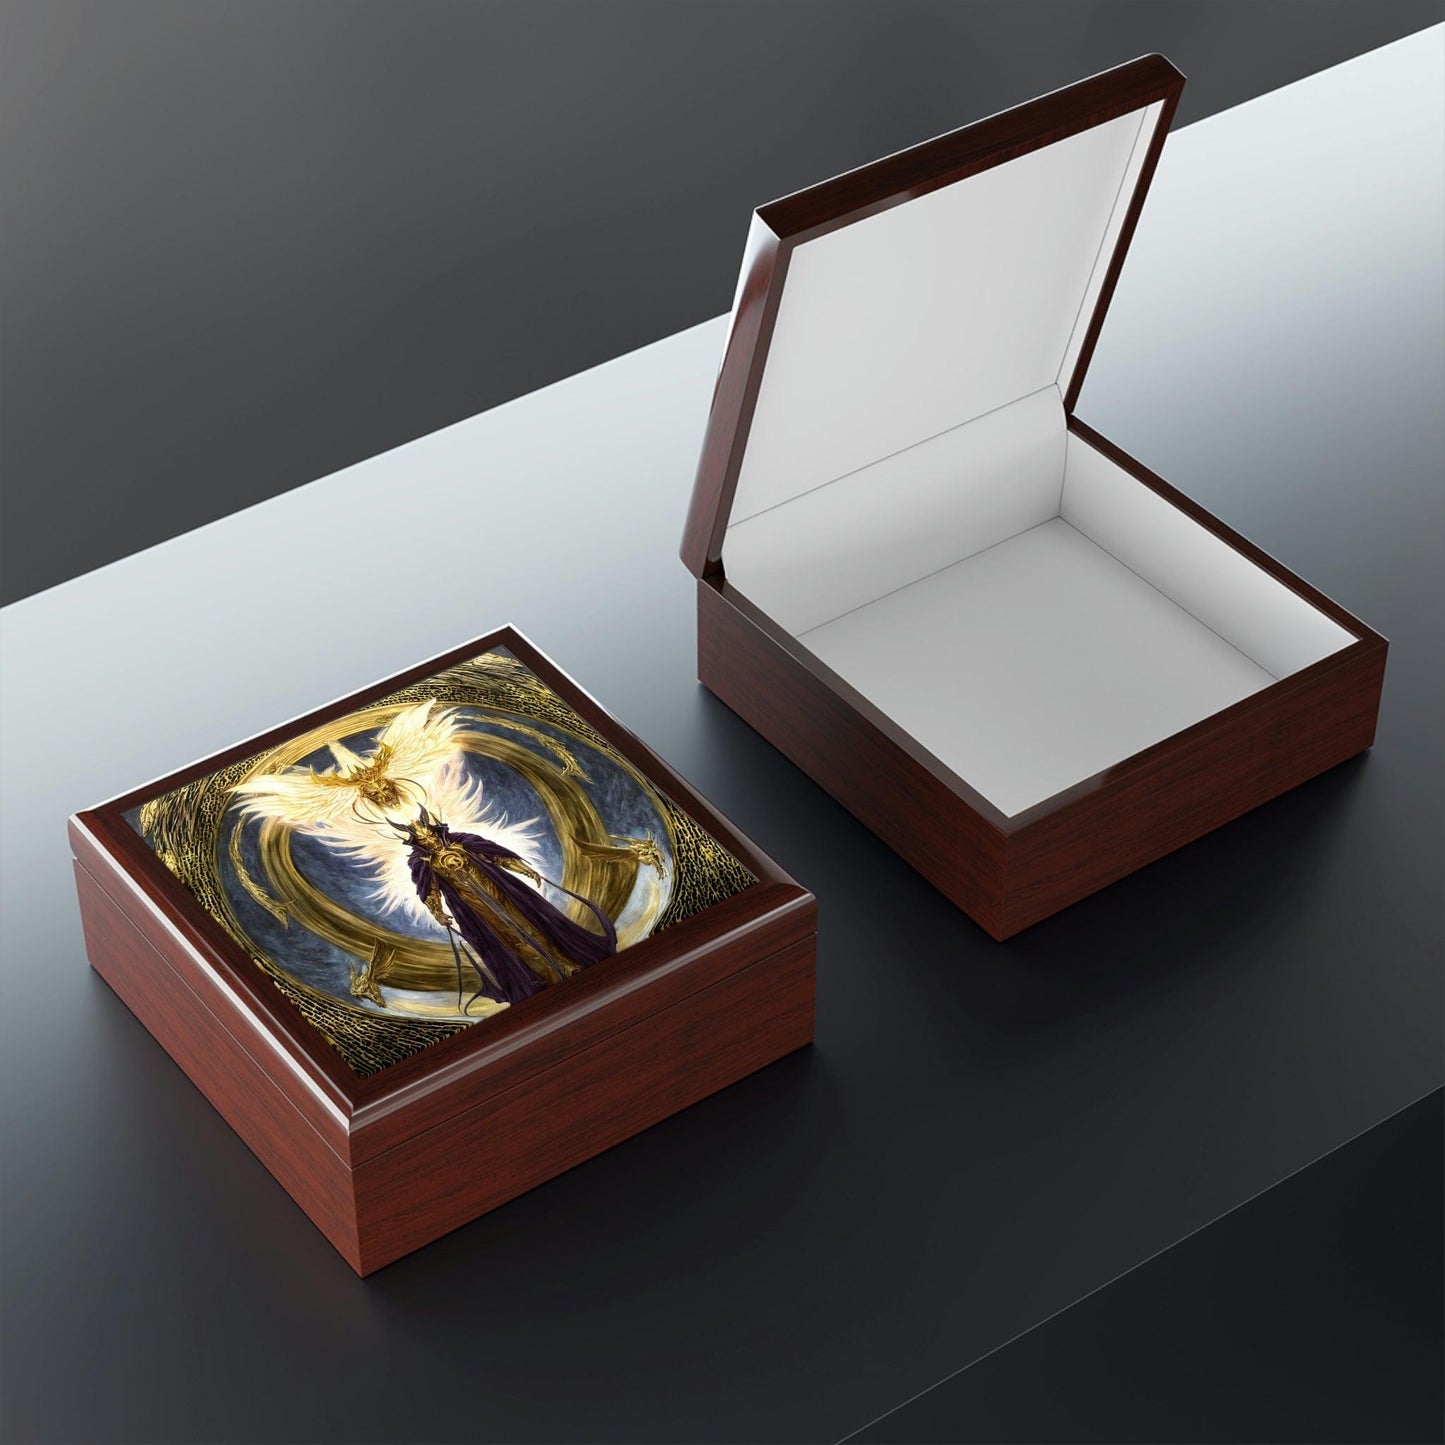 Lucifers-Jewelry-Box-untuk-menyimpan-azimat-dan-cincin-9